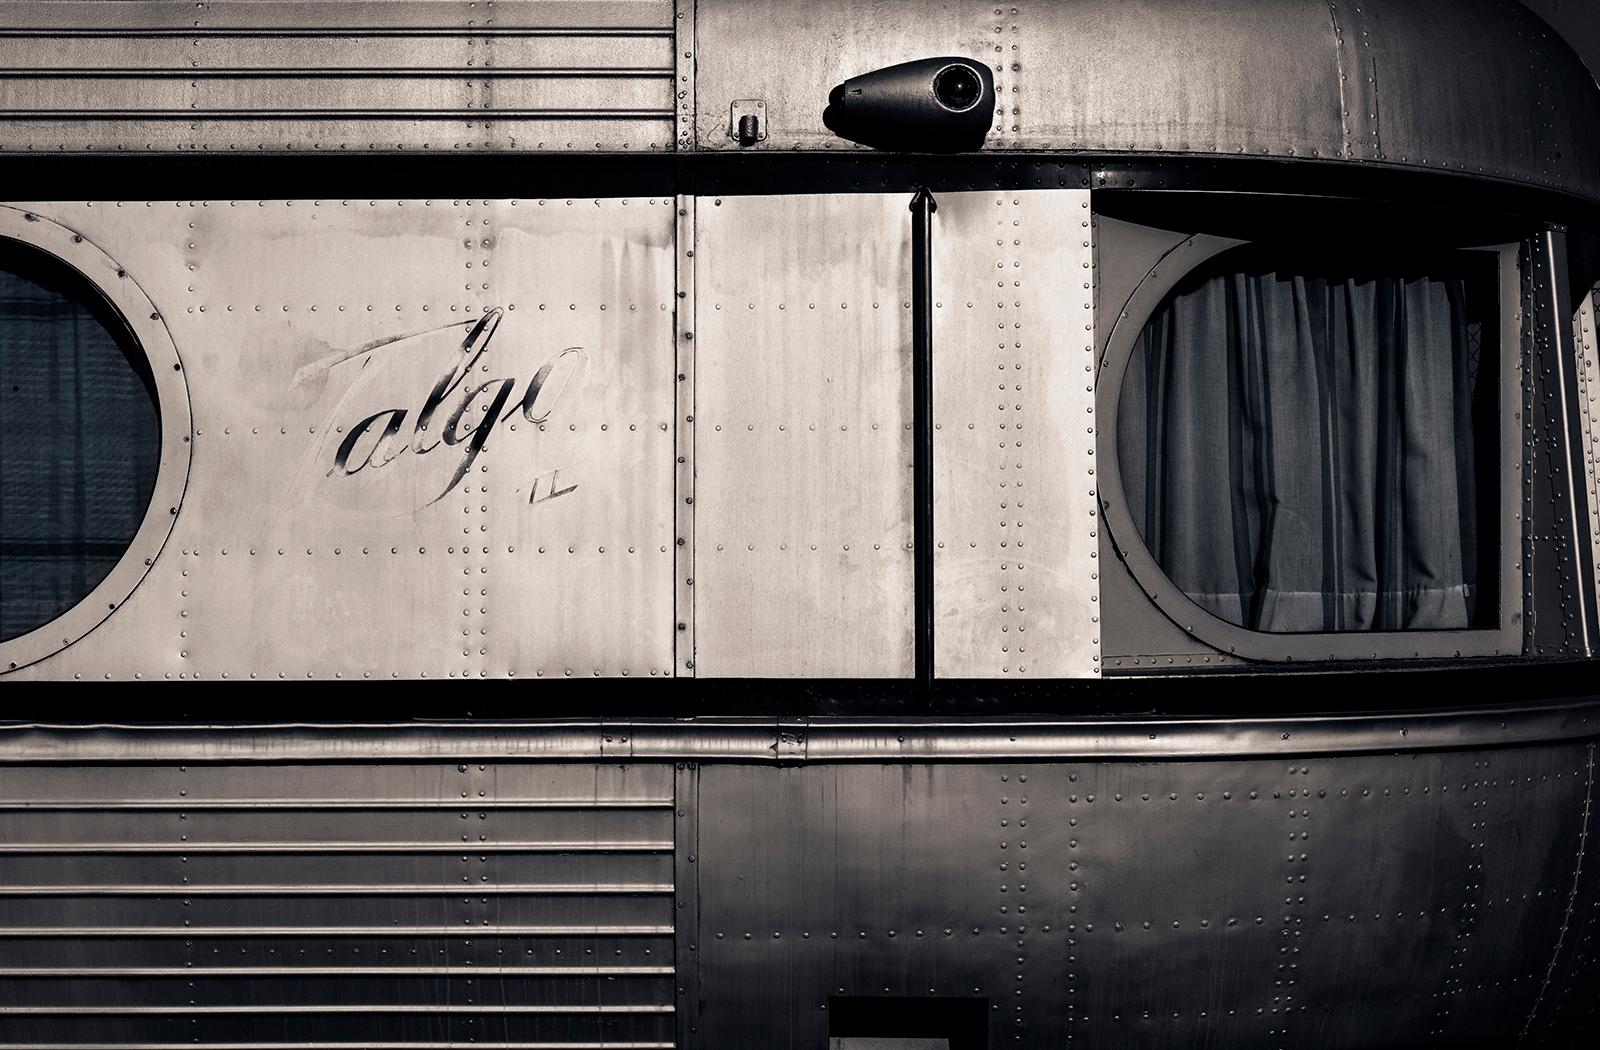 Ian Sanderson Still-Life Photograph – Train – signierter Kunstdruck in limitierter Auflage, Transport, Stillleben in Übergröße